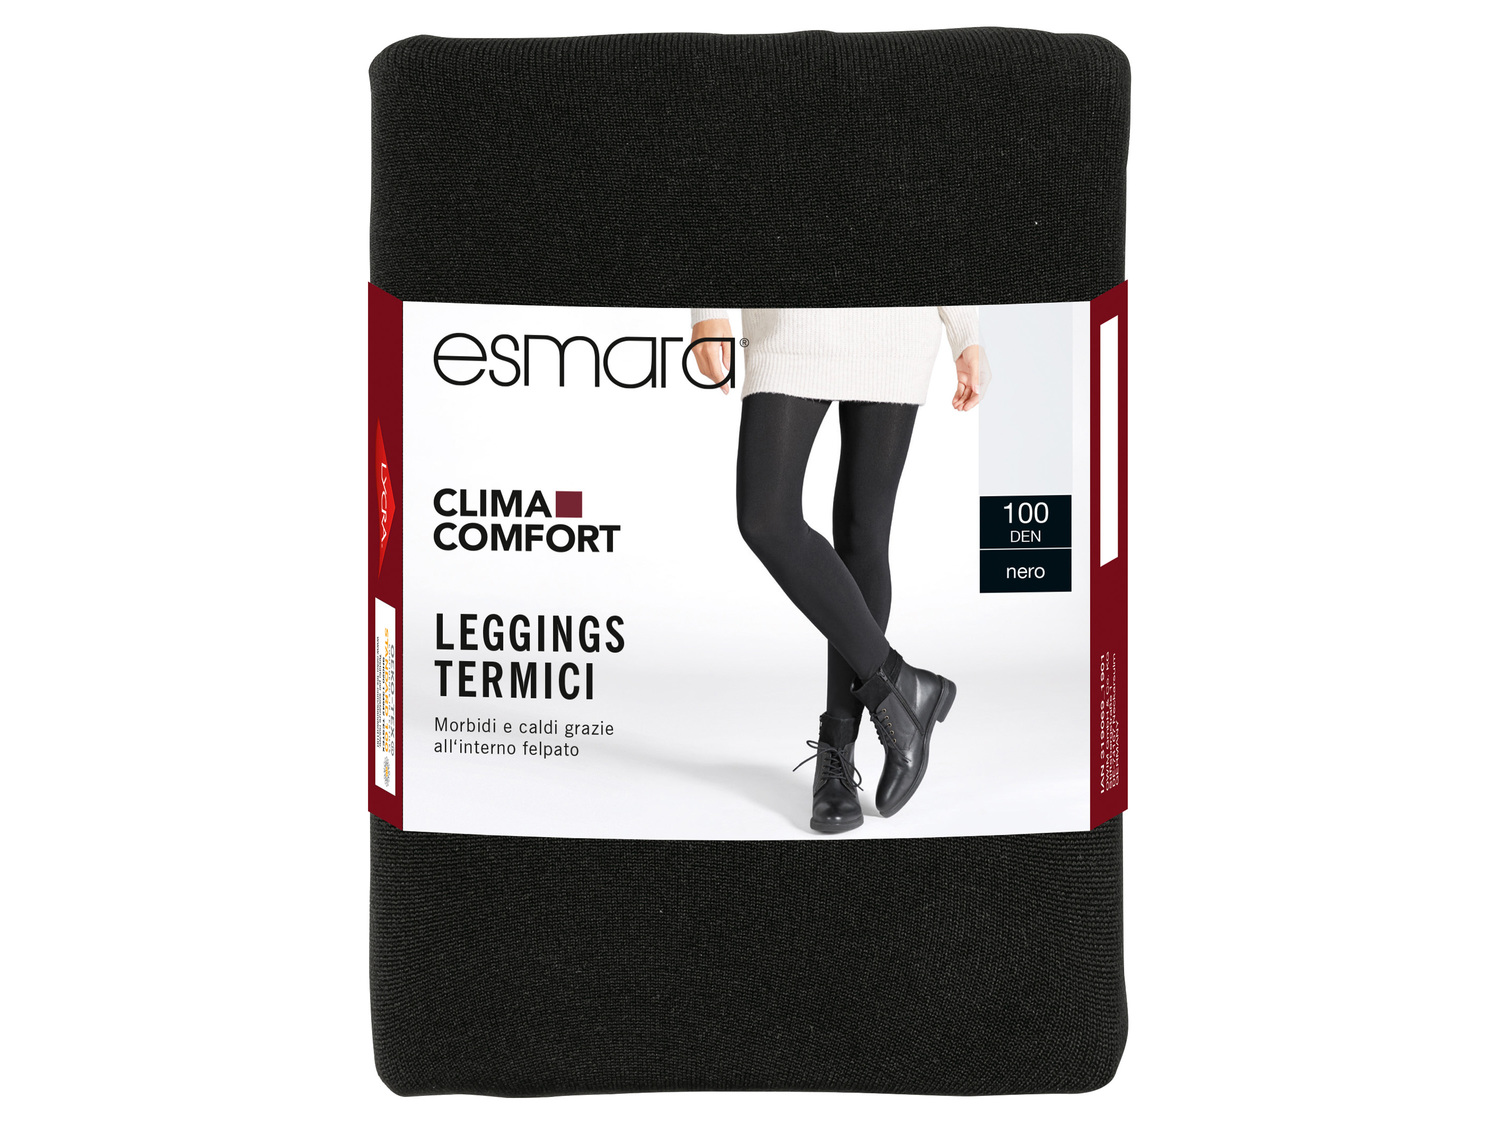 Collant o leggings termici da donna 100 DEN Esmara, le prix 3.99 &#8364; 
Misure: ...